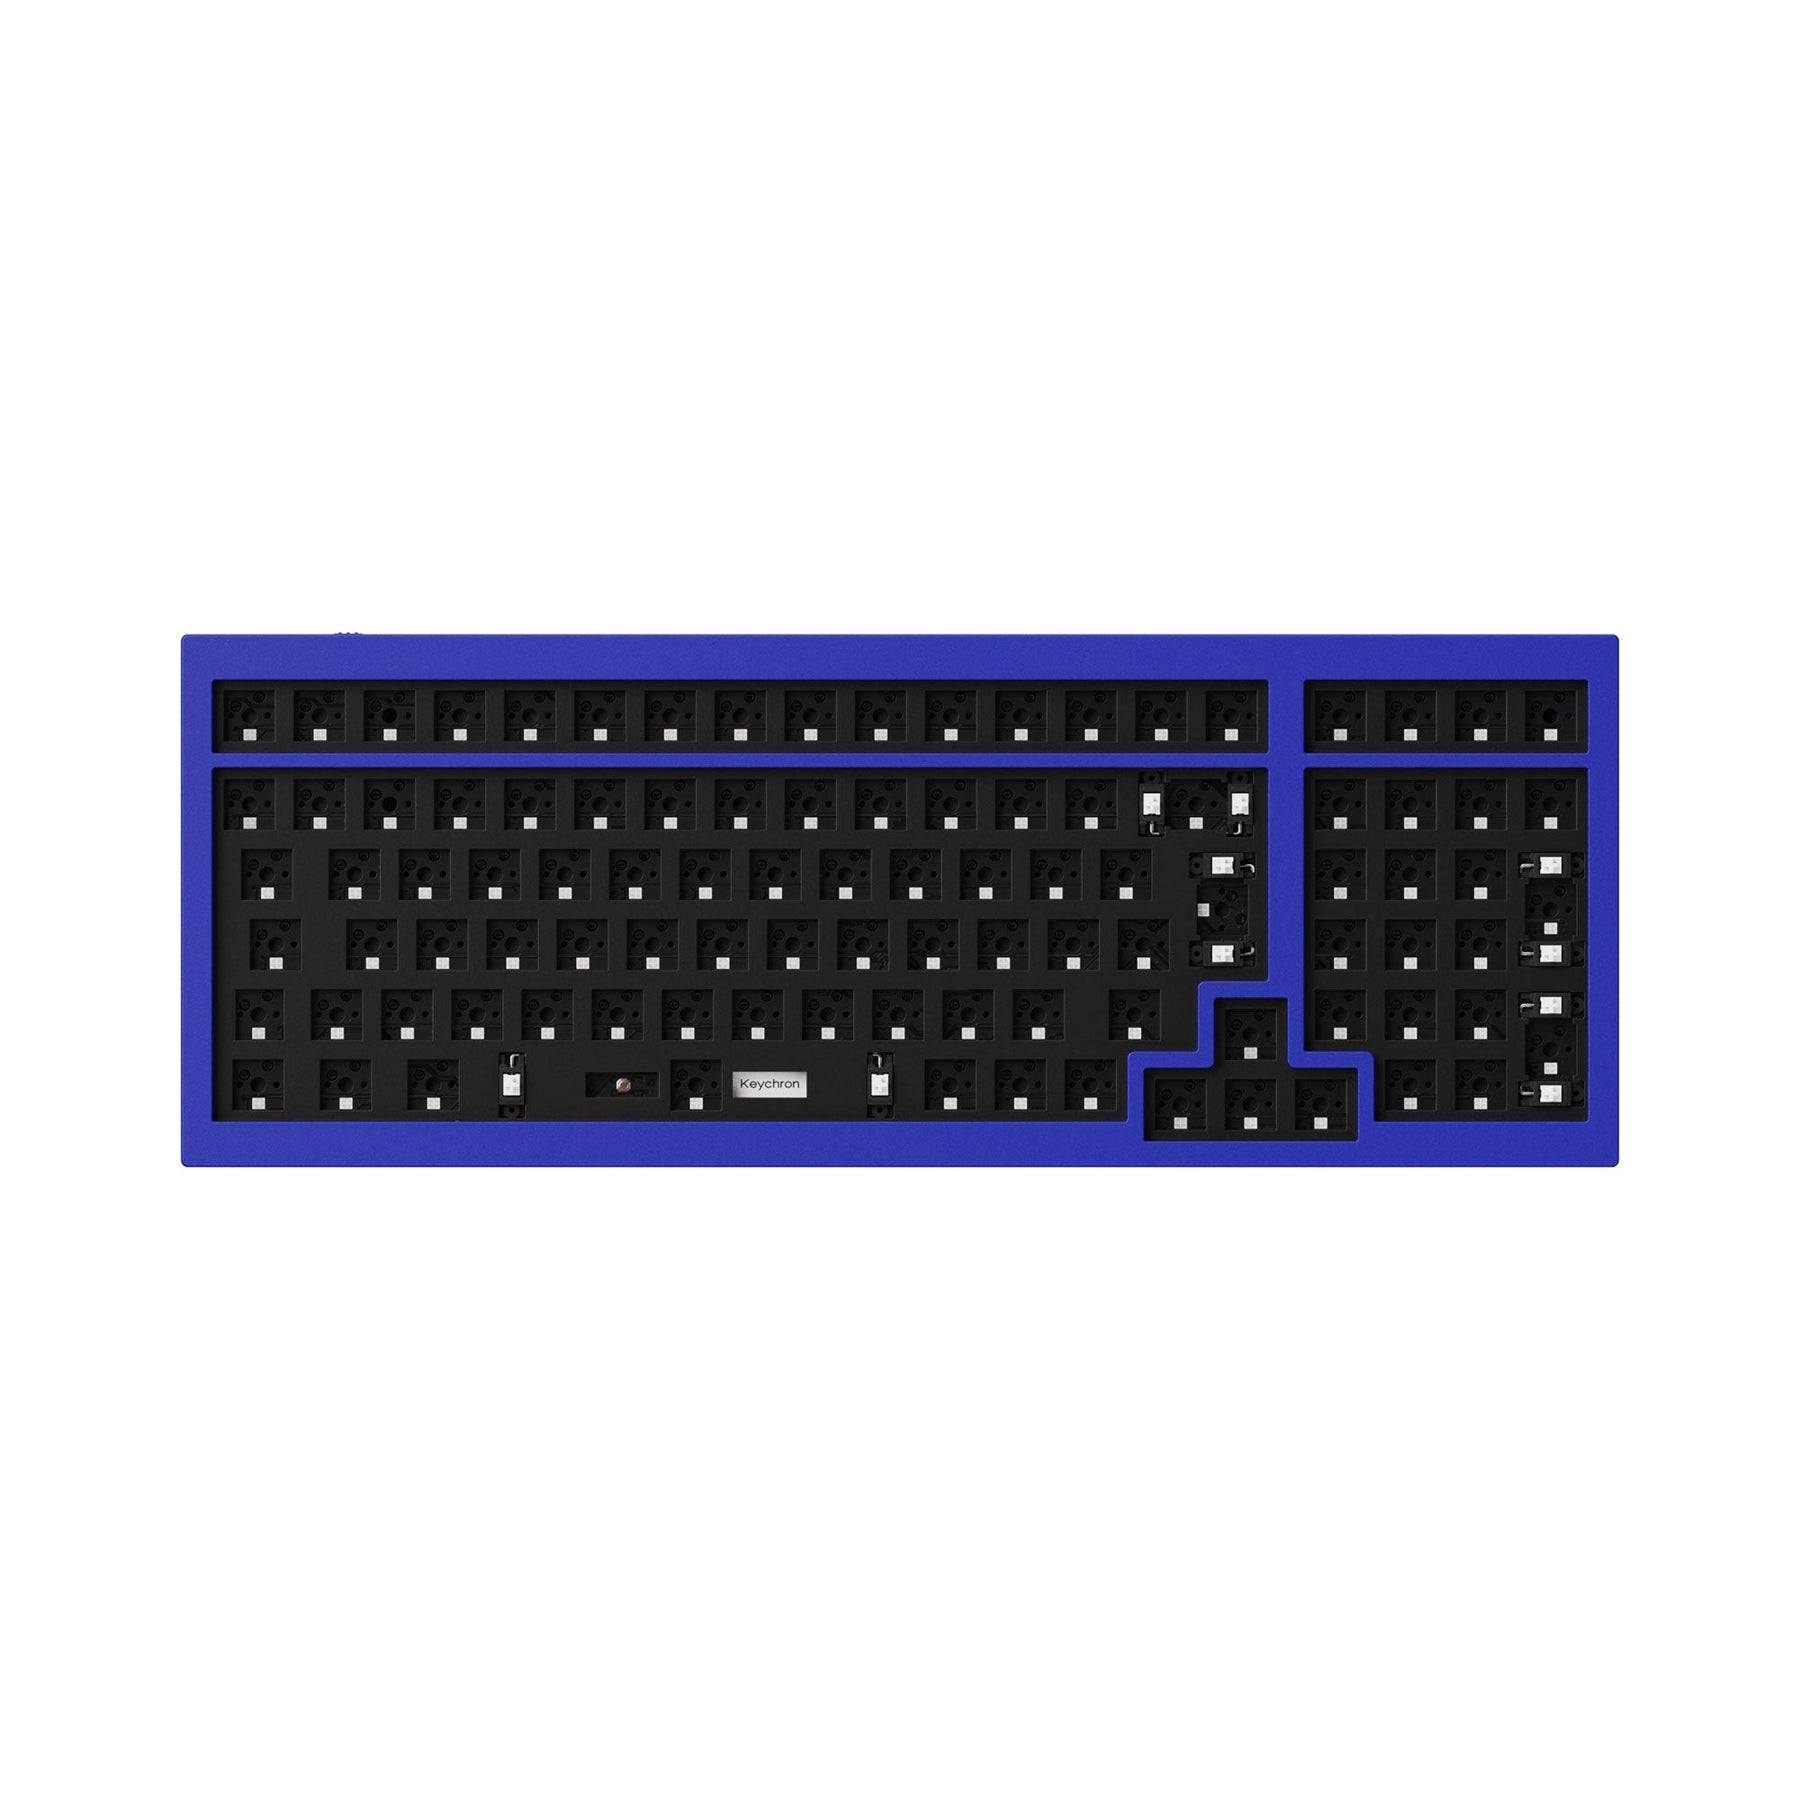 Keychron Q5 QMK Benutzerdefinierte mechanische Tastatur (US-ANSI-Layout)